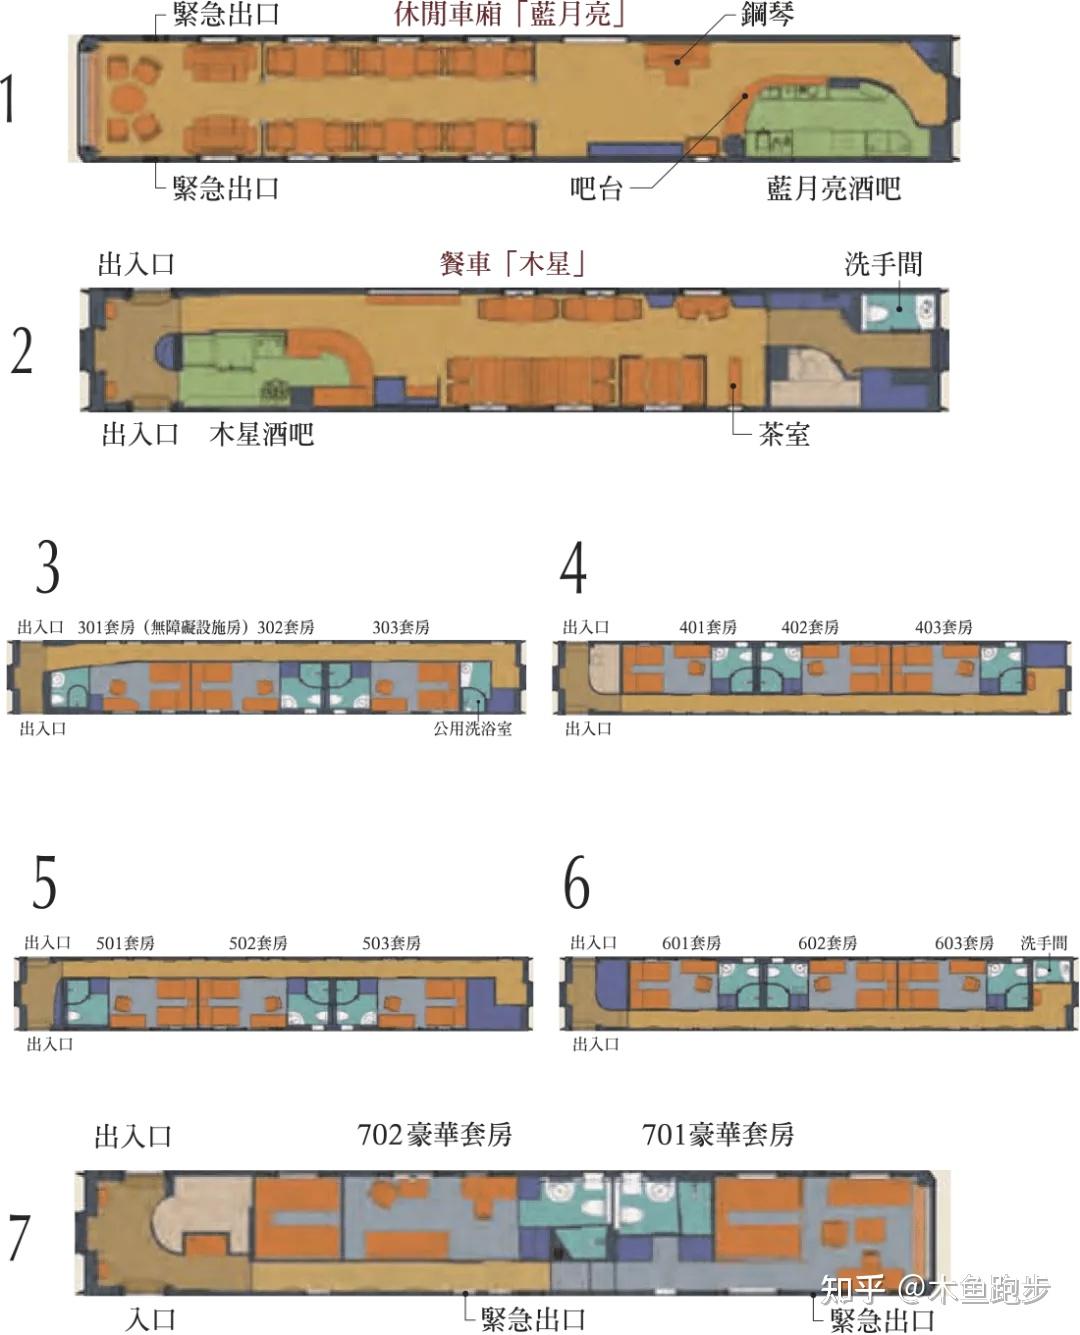 在cnn评选出的11列世界最顶级豪华火车中 ,日本的九州七星号就属